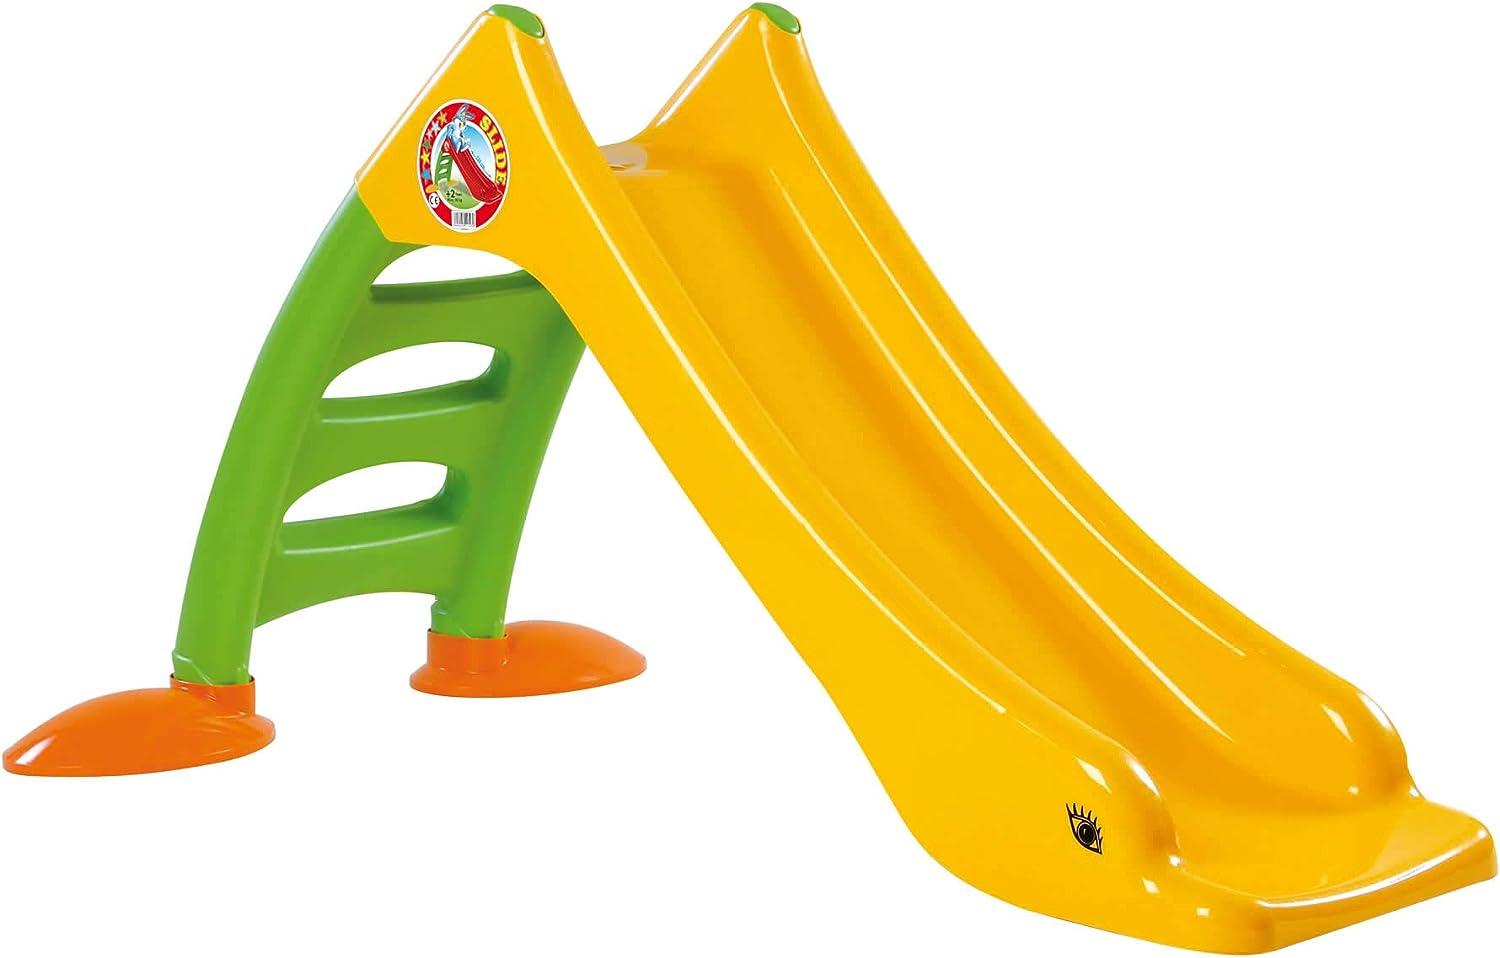 Dohany 2in1 Kinderrutsche Wasserrutsche freistehend Rutschbahn Rutschlänge 120 cm (gelb/grün) Bild 1